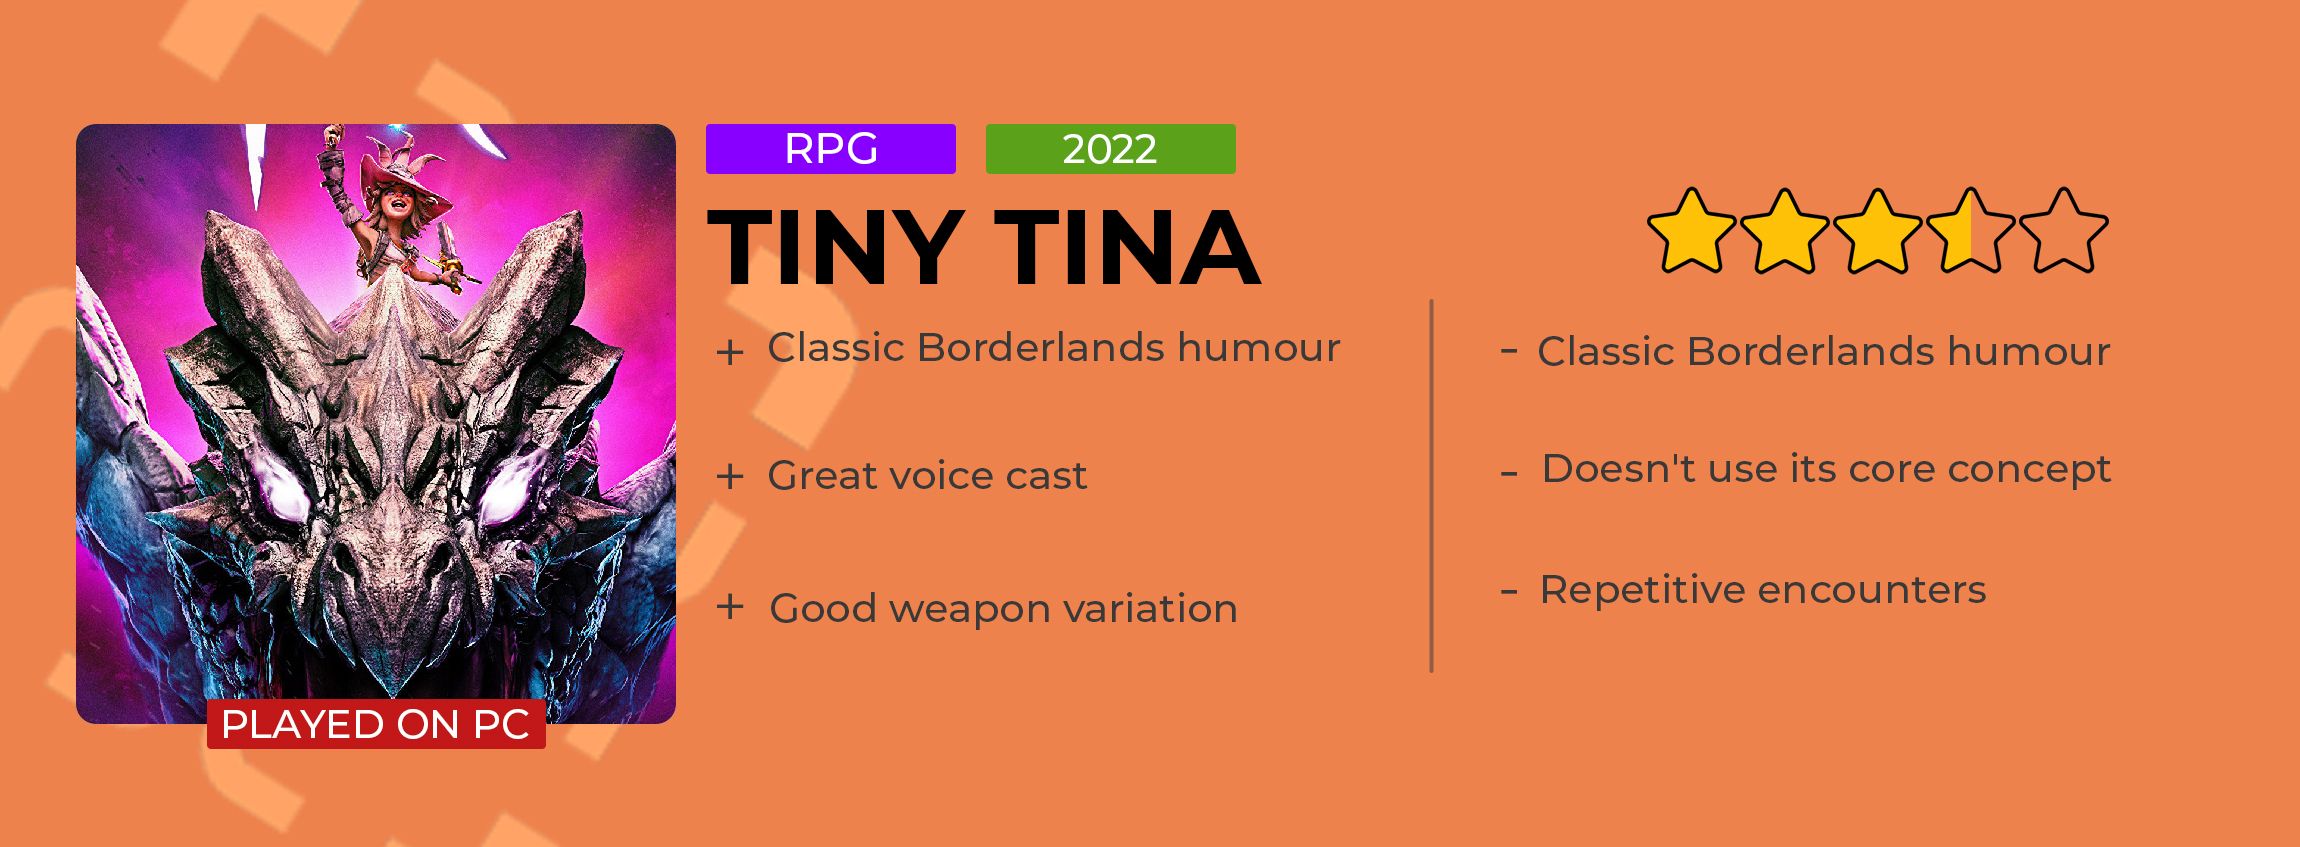 Tiny Tina Review Card